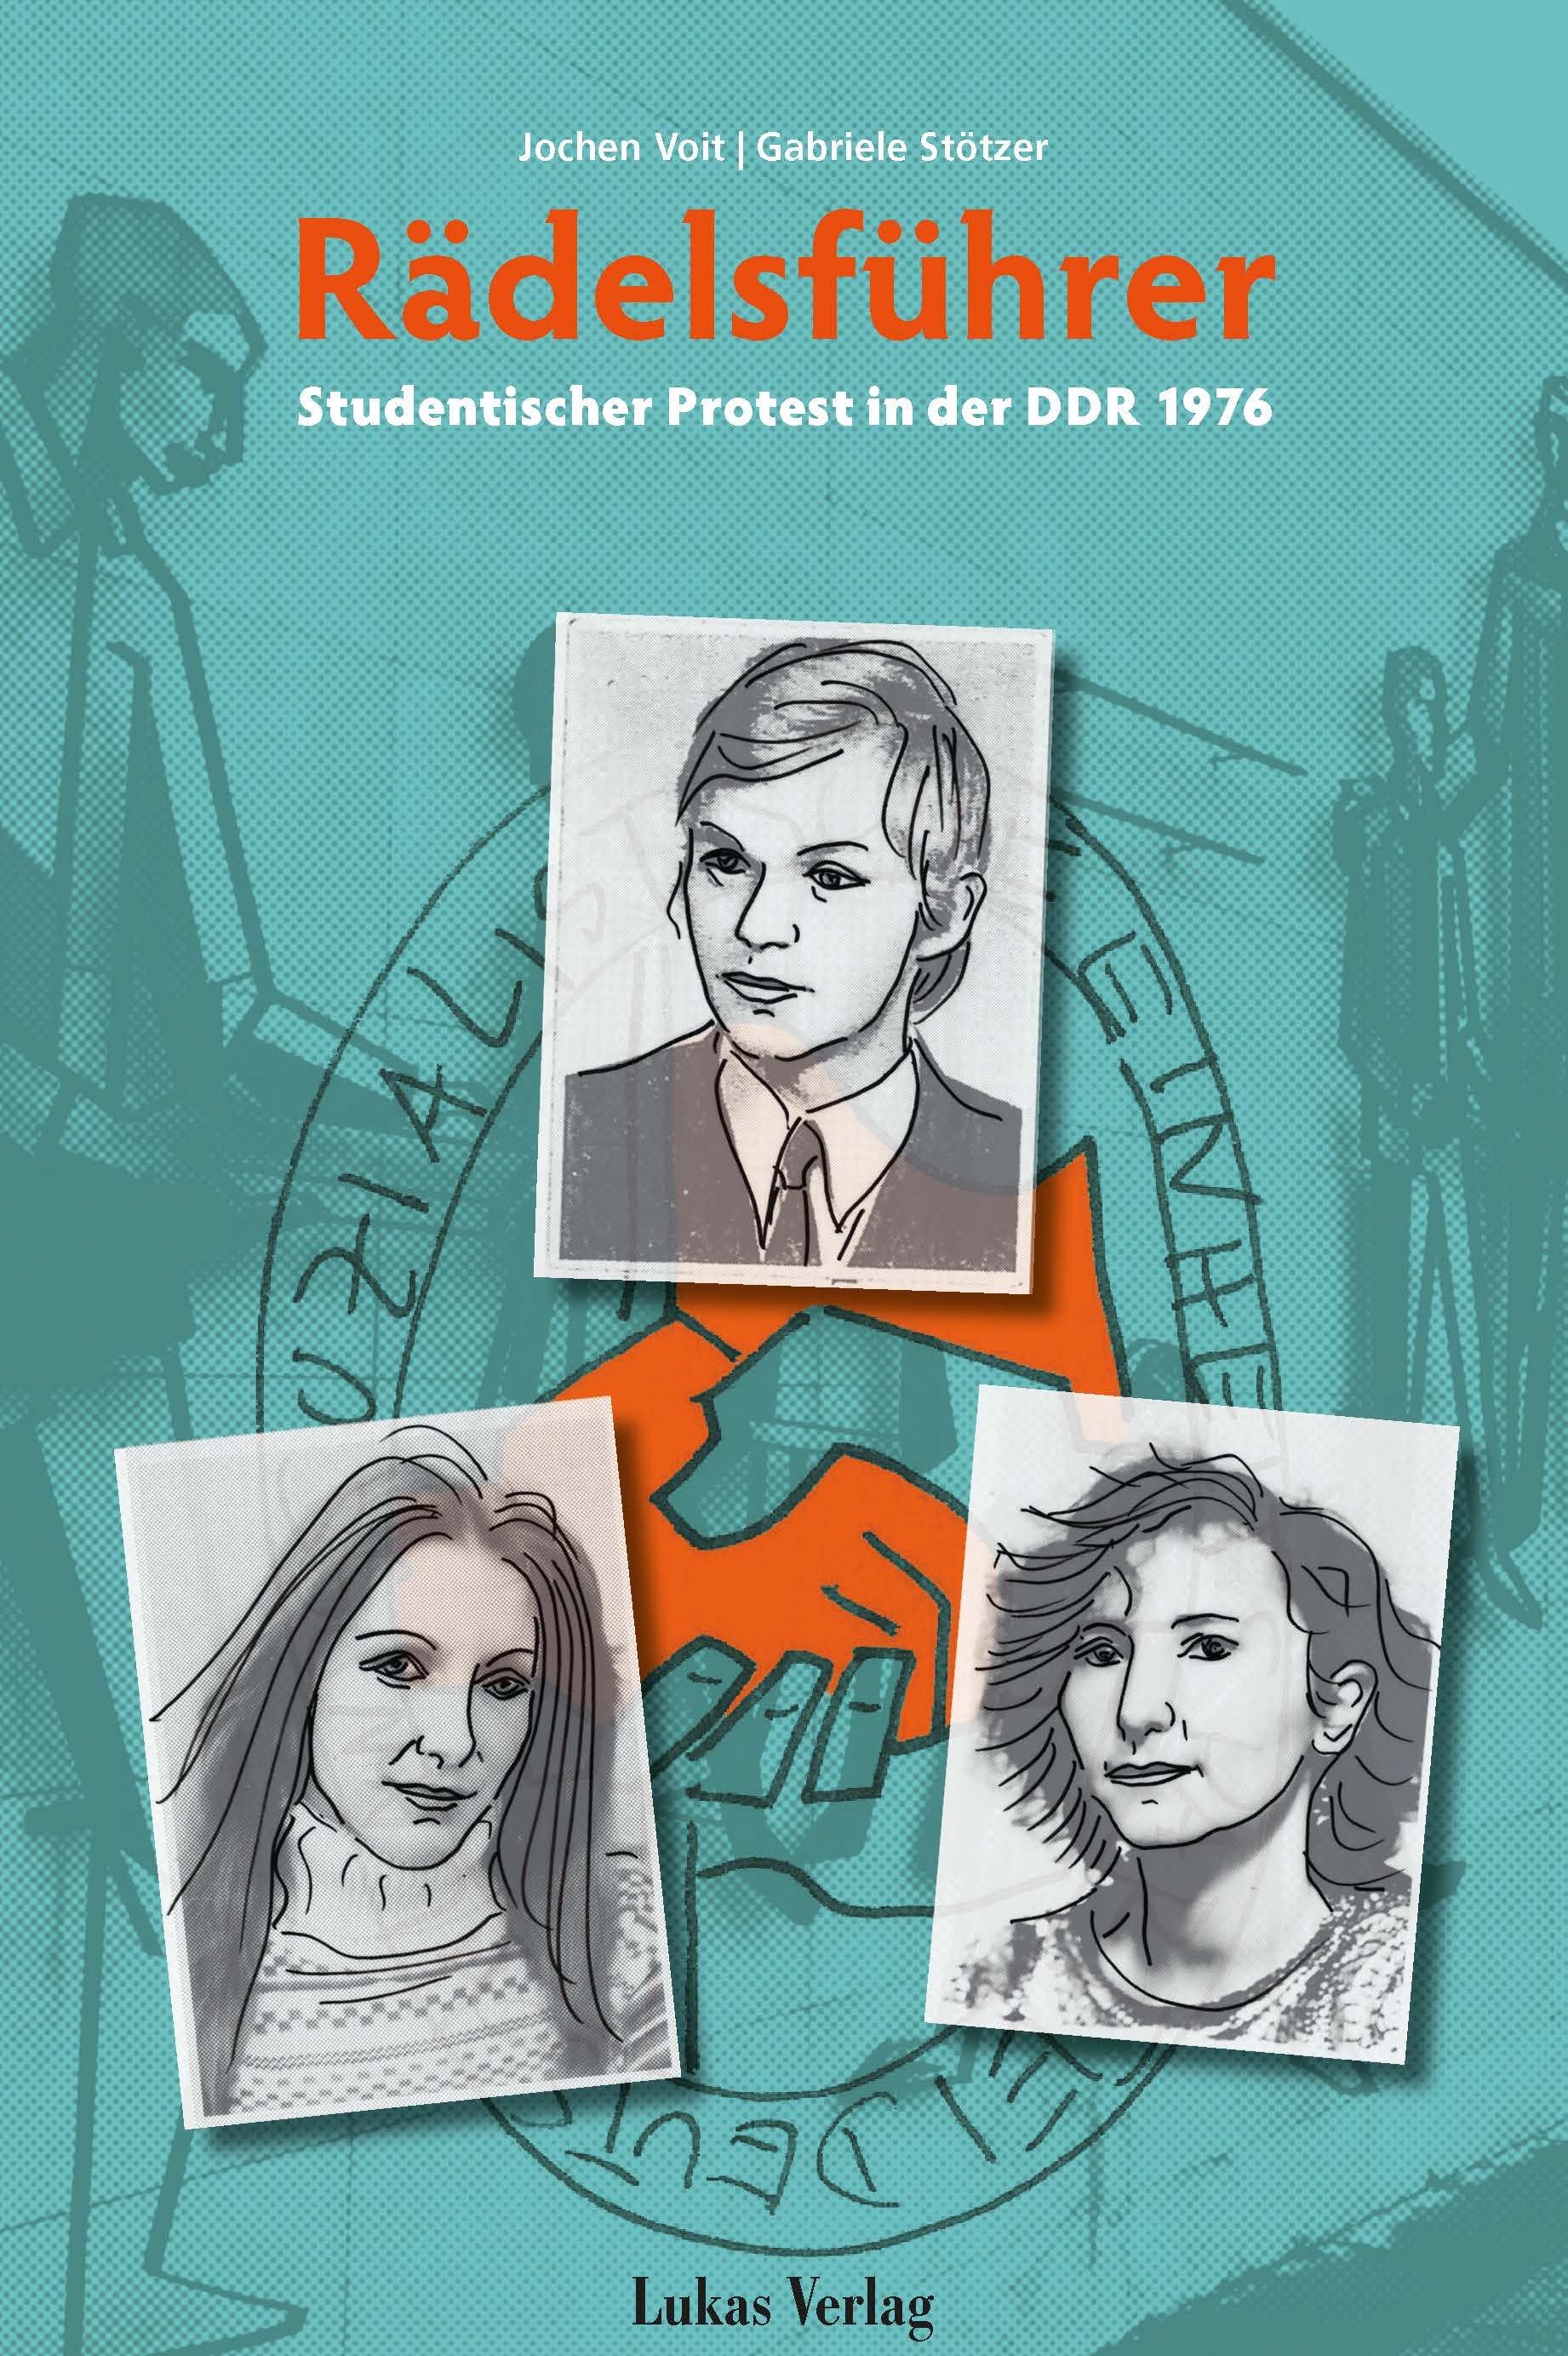 Buchcover von "Rädelsführer. Studentischer Protest in der DDR 1976"